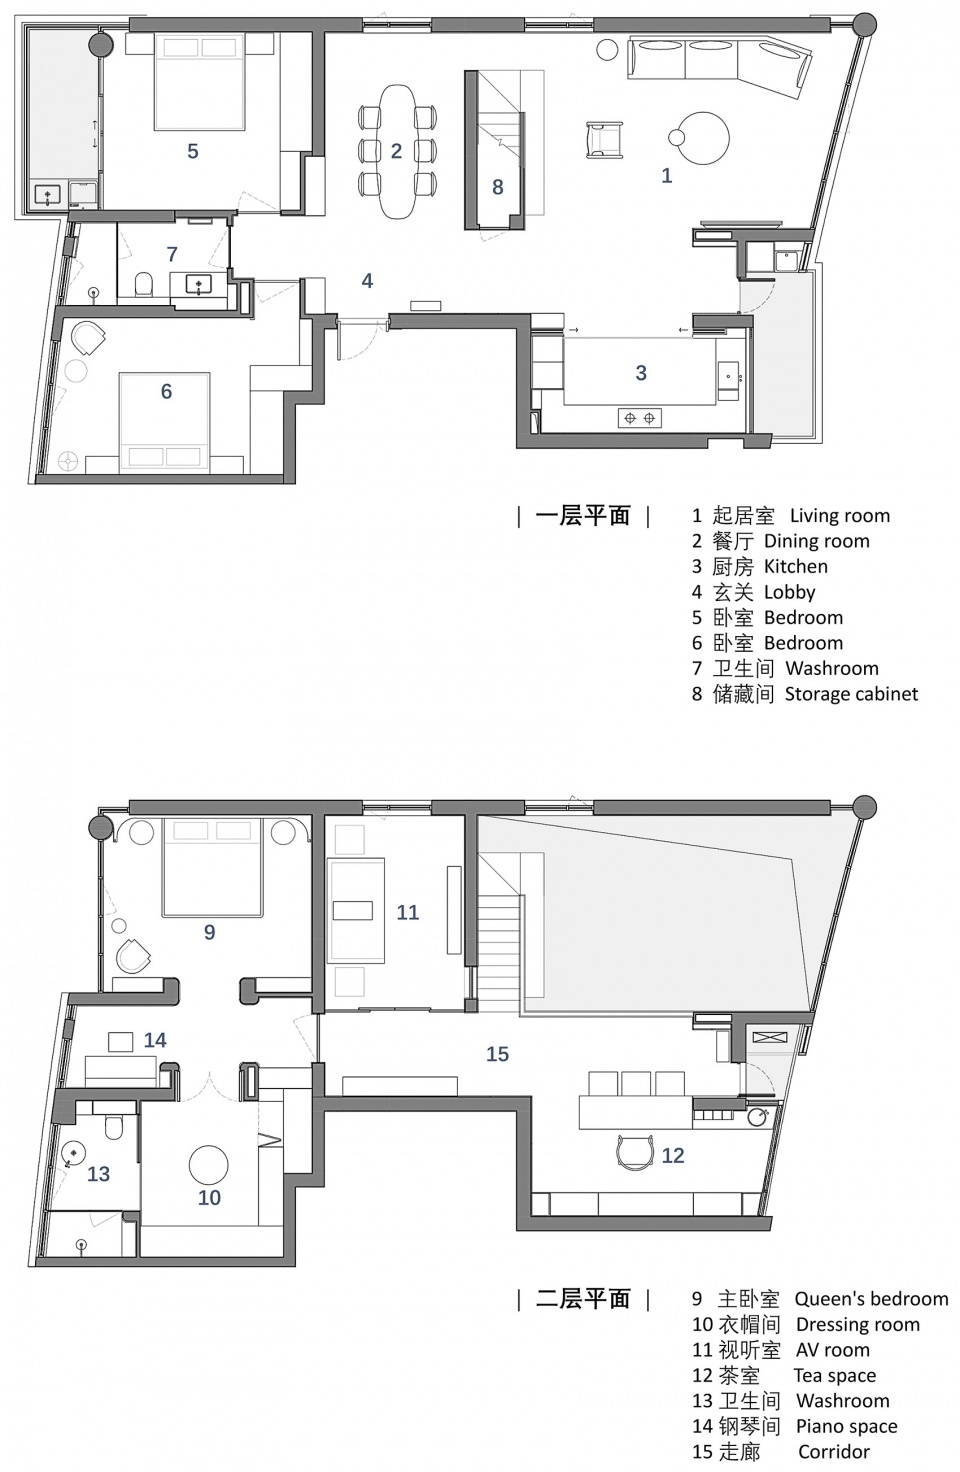 265㎡複式設計,265㎡,頂層複式設計,複式設計案例,複式設計方案,現代風格複式設計,住宅設計,家裝設計,上海,外灘頂層複式私宅改造,方居建築設計